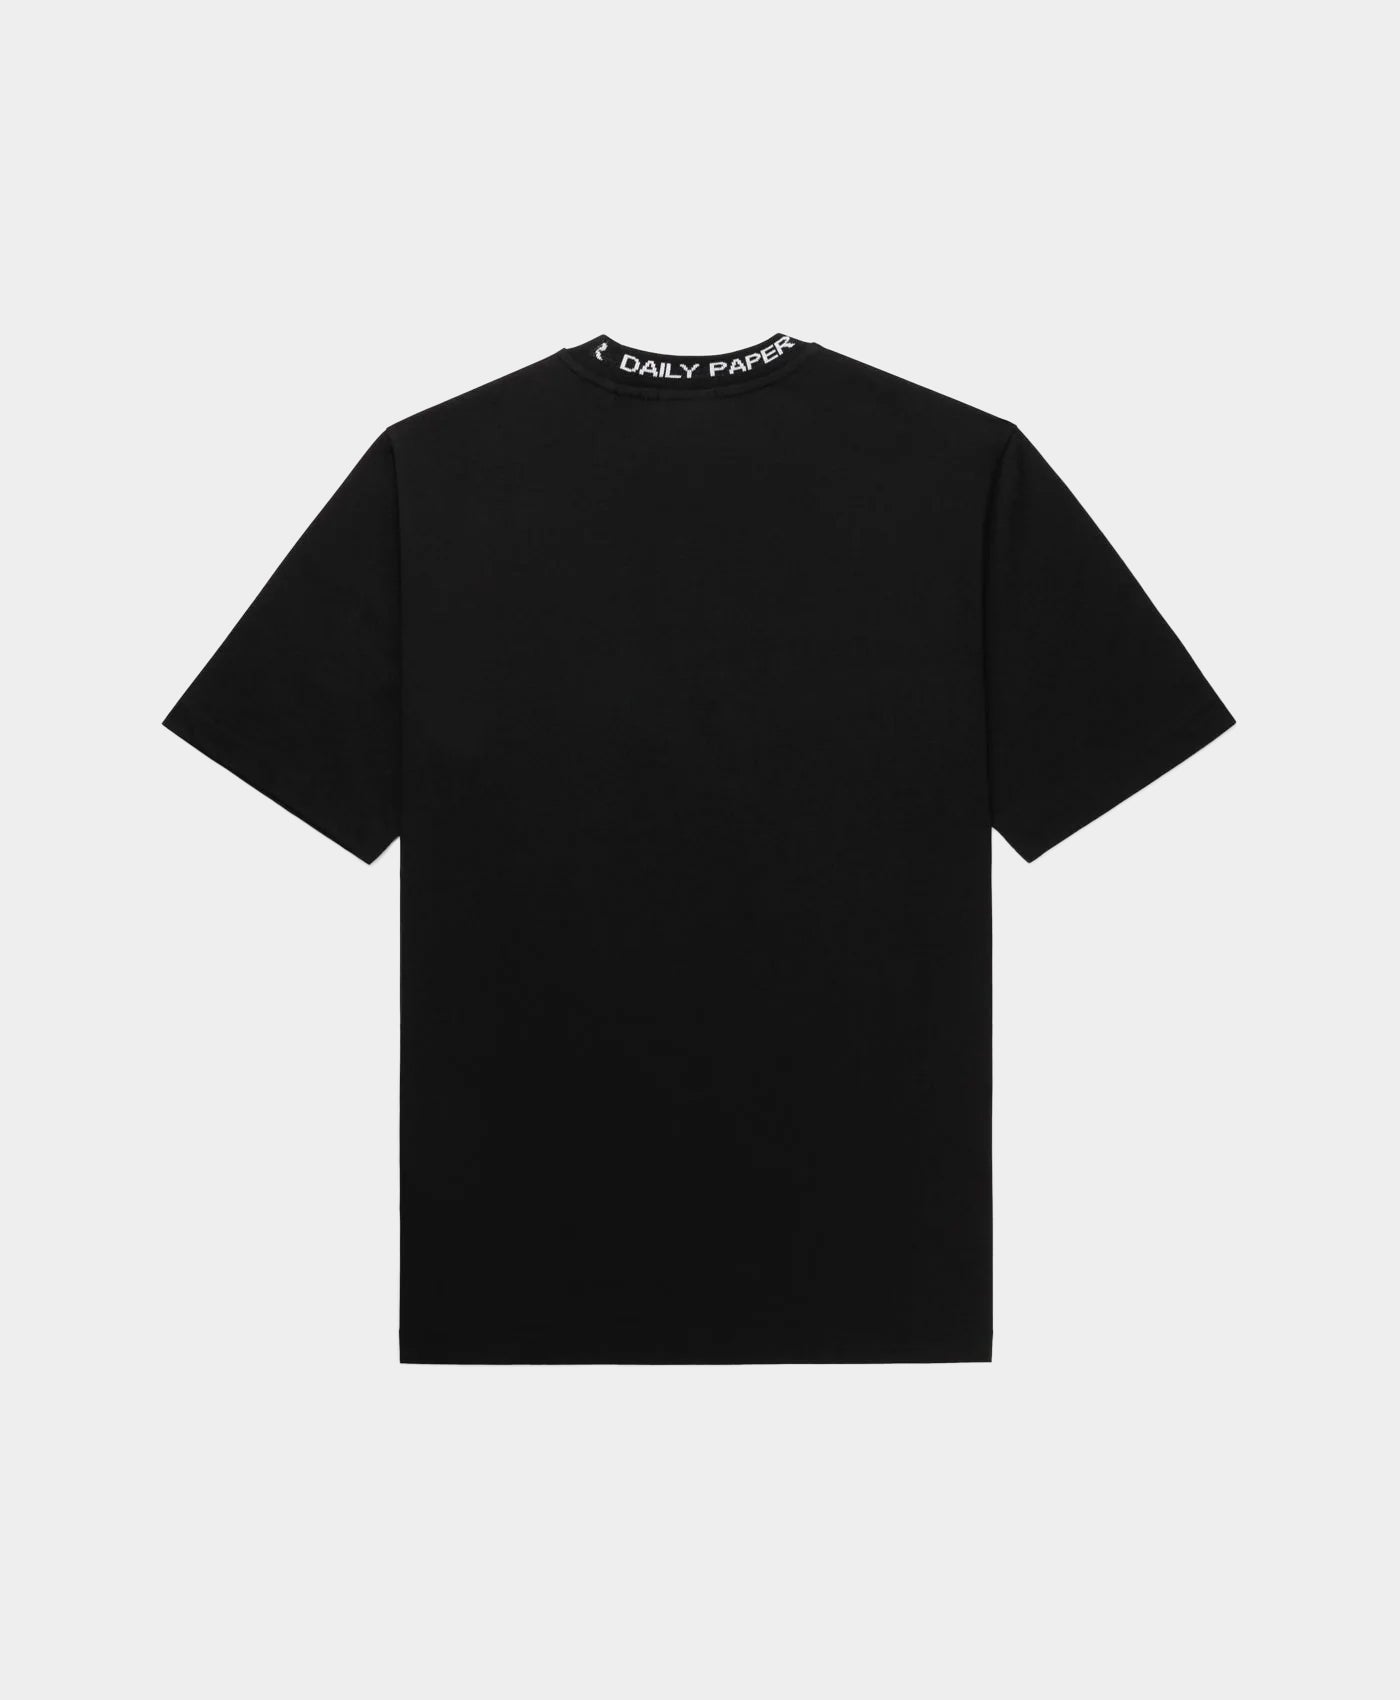 Daily Paper - Black Erib T-Shirt – Daily Paper Worldwide